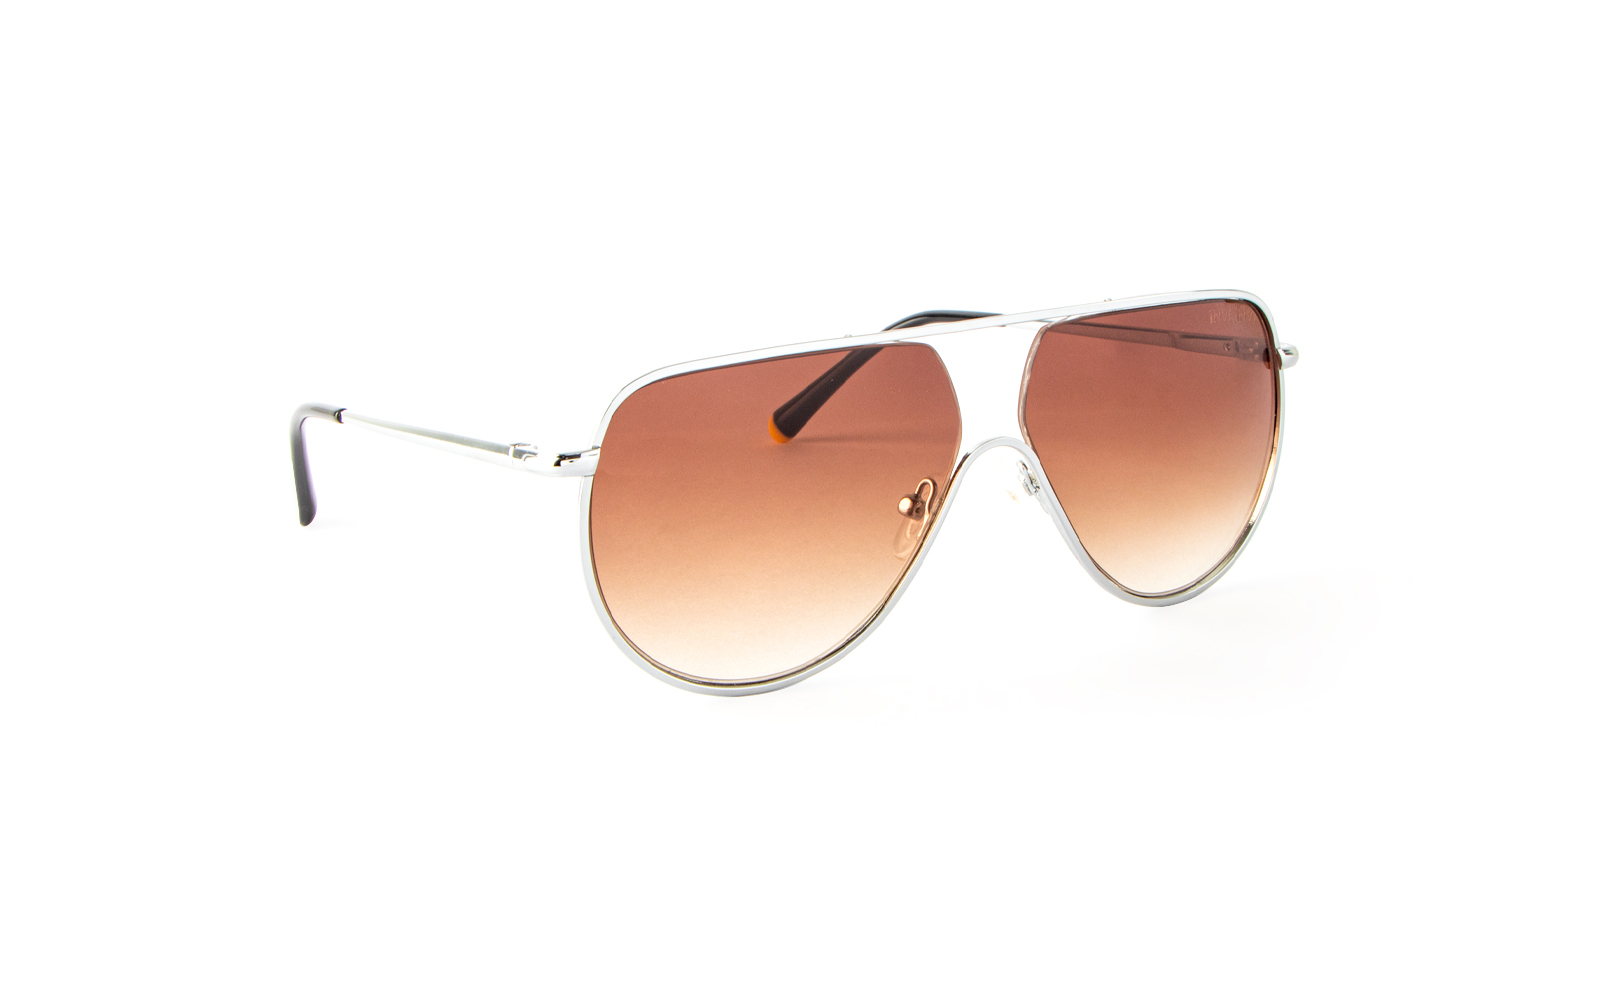 Invicta Men's Aviator Aviator Sunglasses, Pink (22524-AVI-03-05)